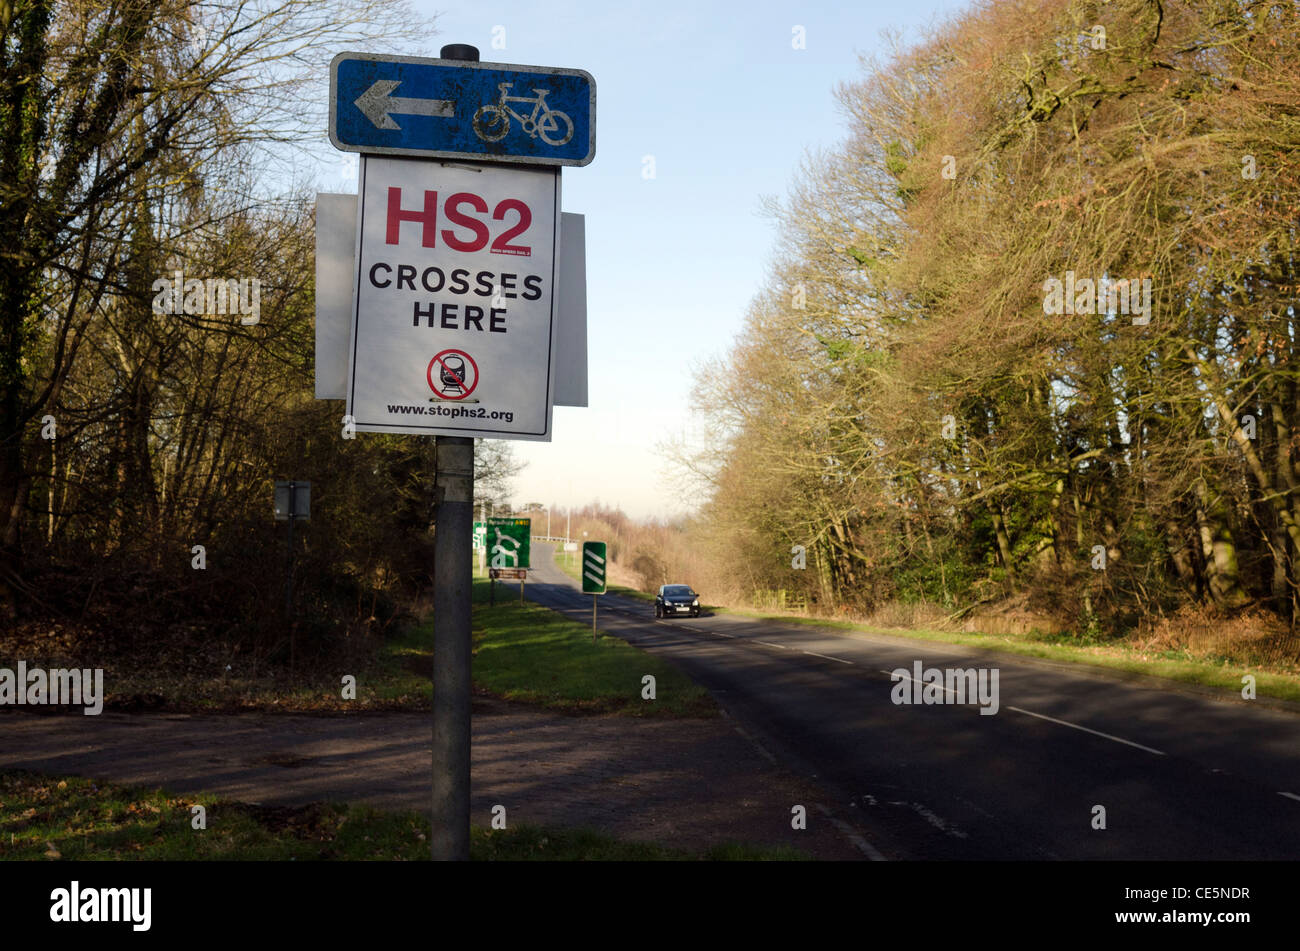 HS2 carretera cruza aquí signo, una campaña anti HS2 Aviso de protesta por la A413 carretera a Wendover Bucks. Foto de stock